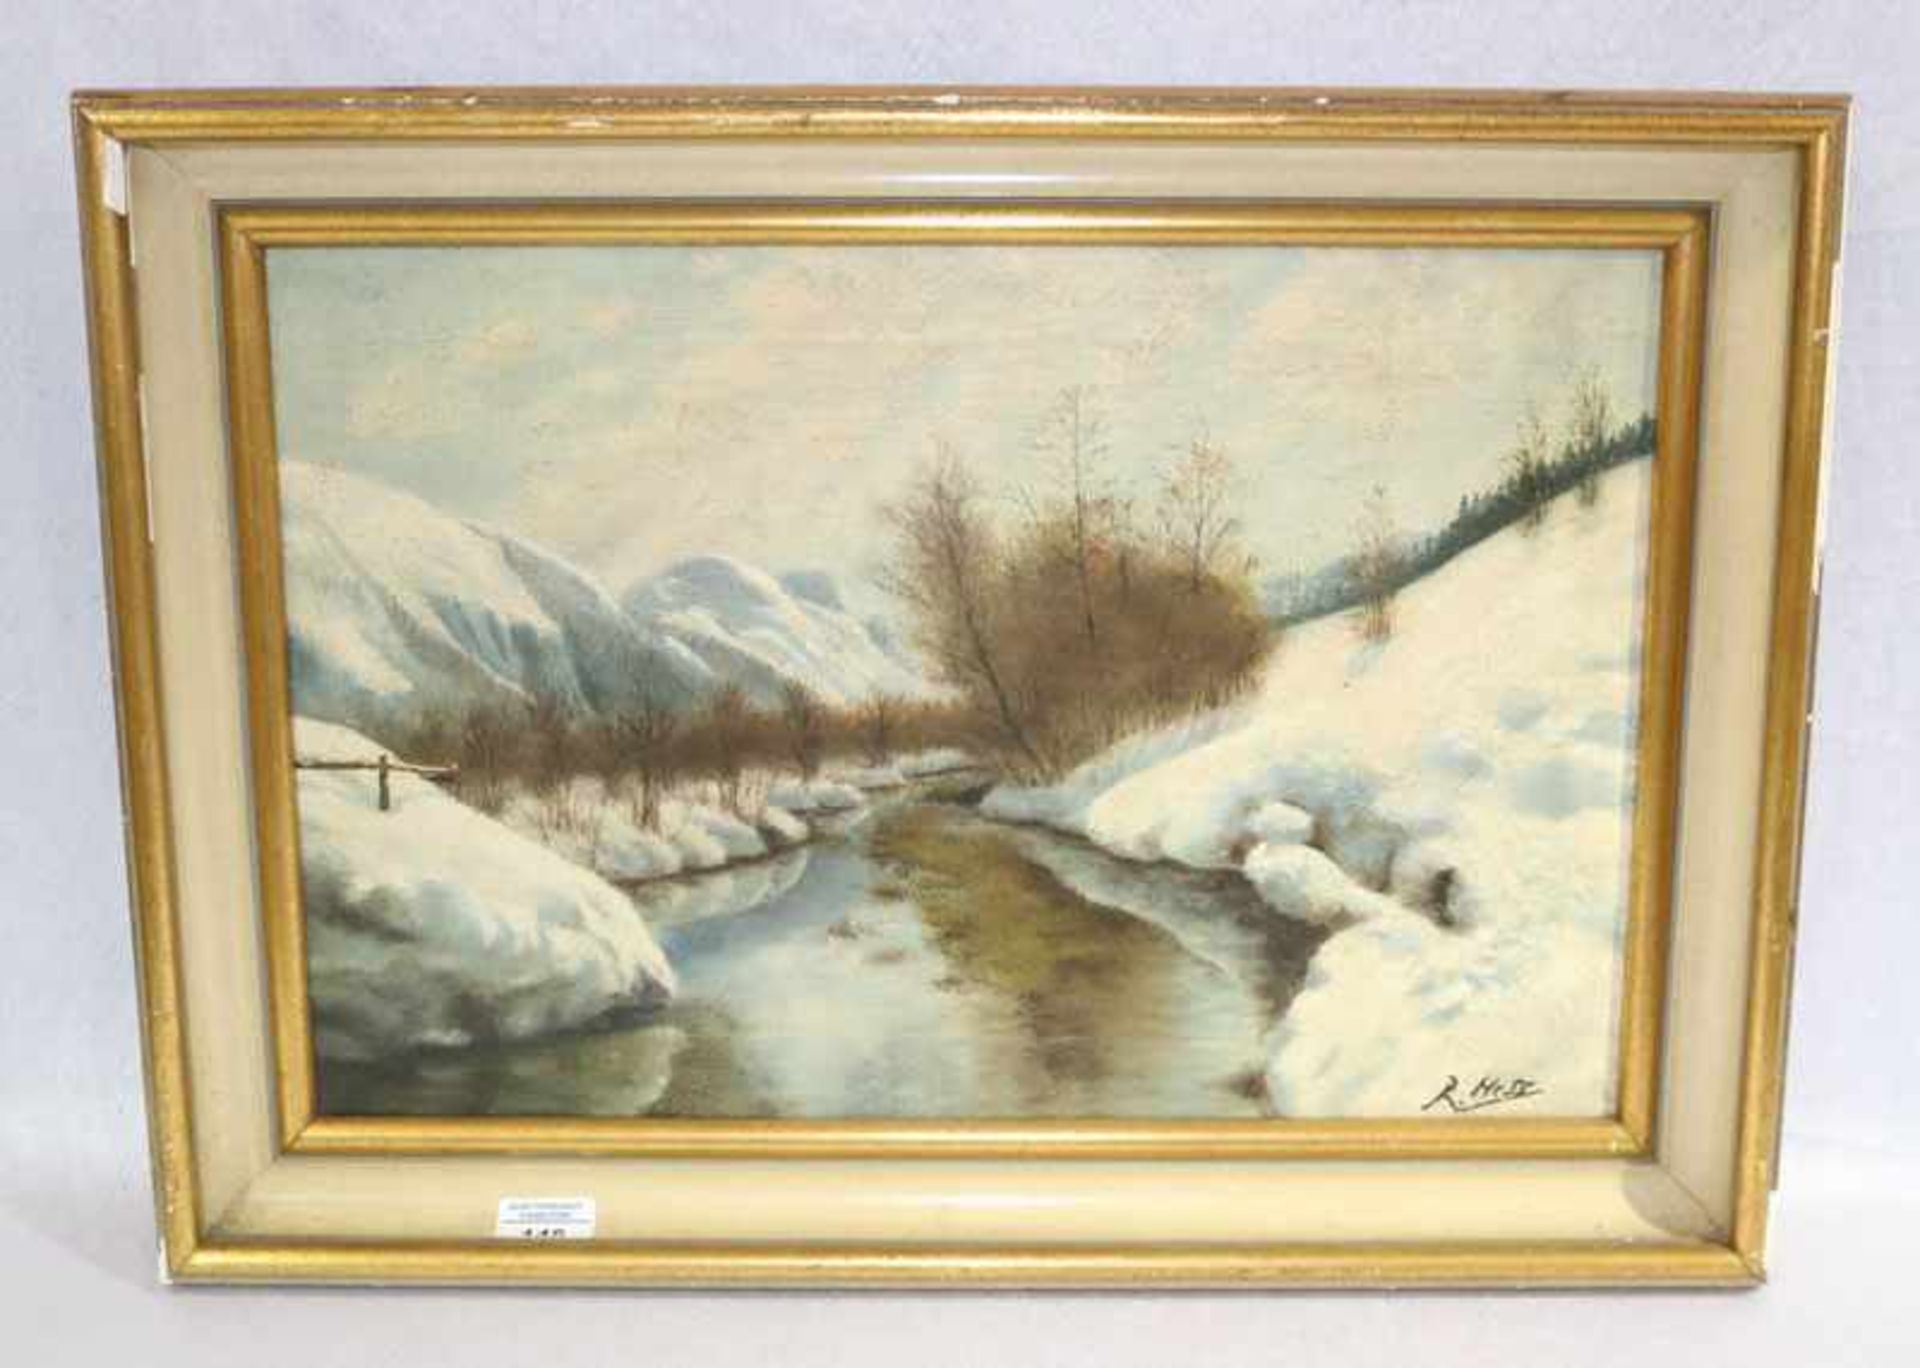 Gemälde ÖL/LW 'Winterlandschaft mit Bachlauf', signiert R. Hess, Reinhard Hess, deutscher Maler, *